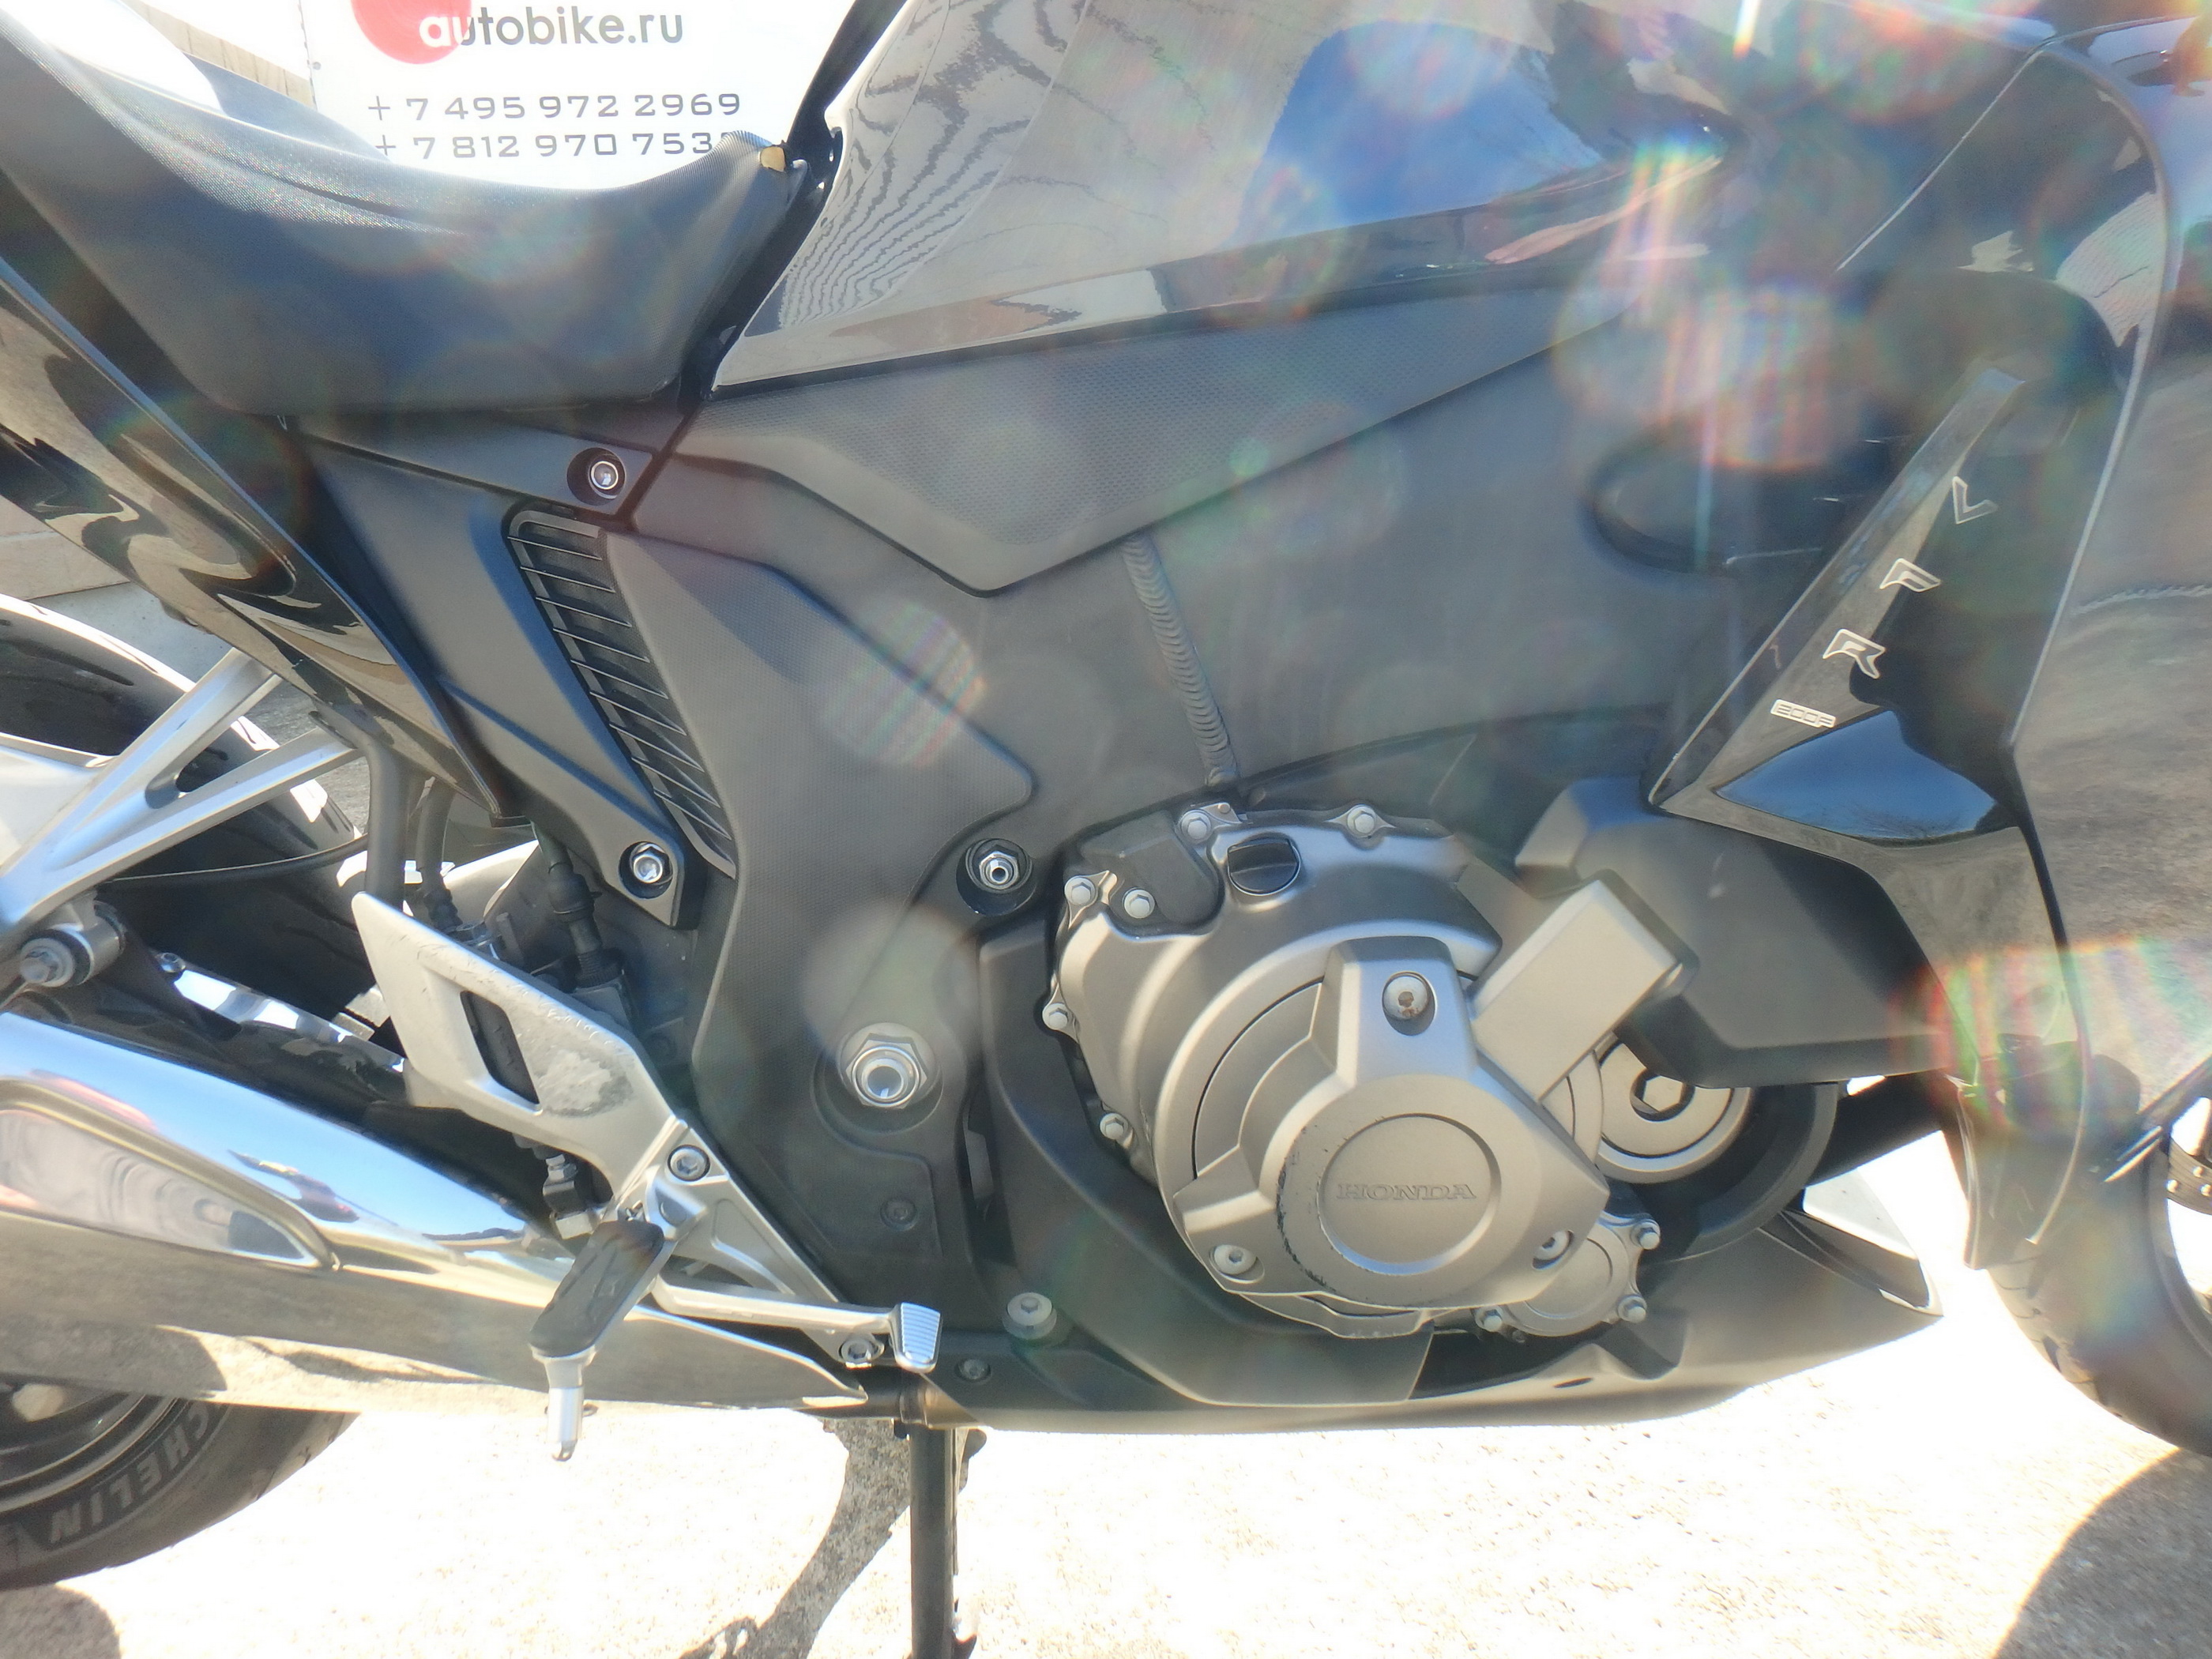 Купить мотоцикл Honda VFR1200FD 2010 фото 20